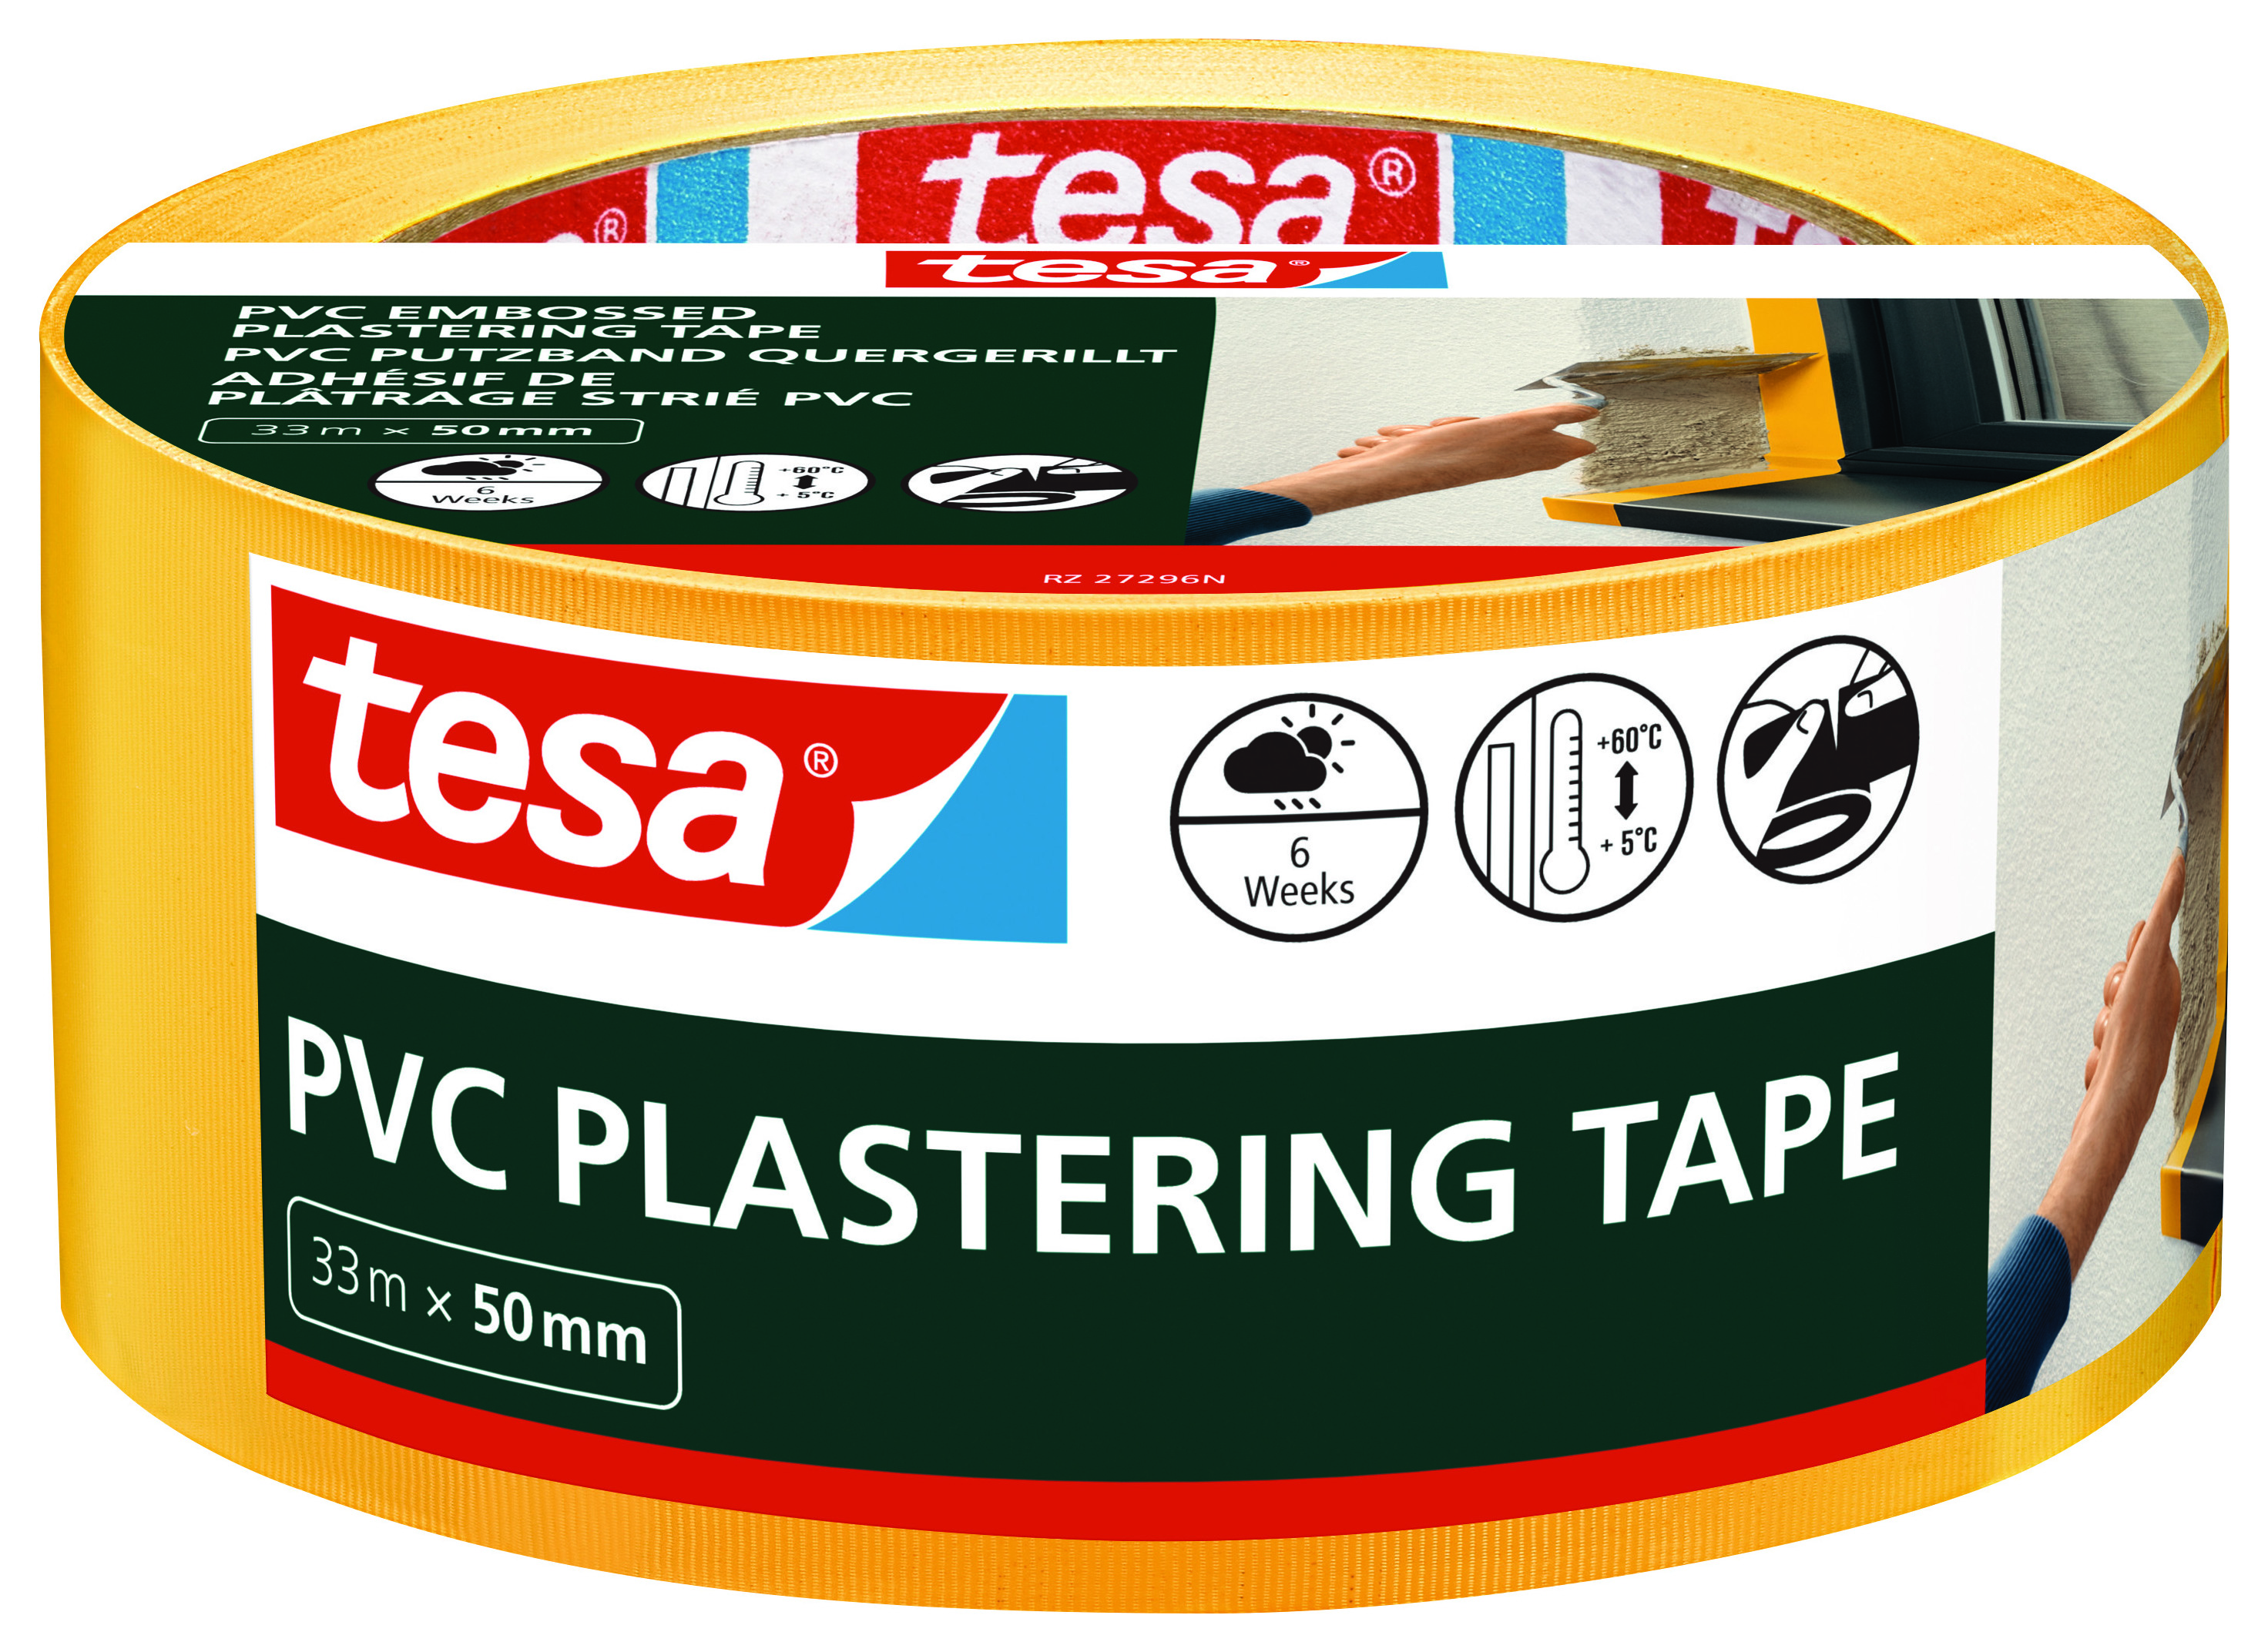 Buy Tesa Plastering Tape Online, Tesa Masking Tape UK